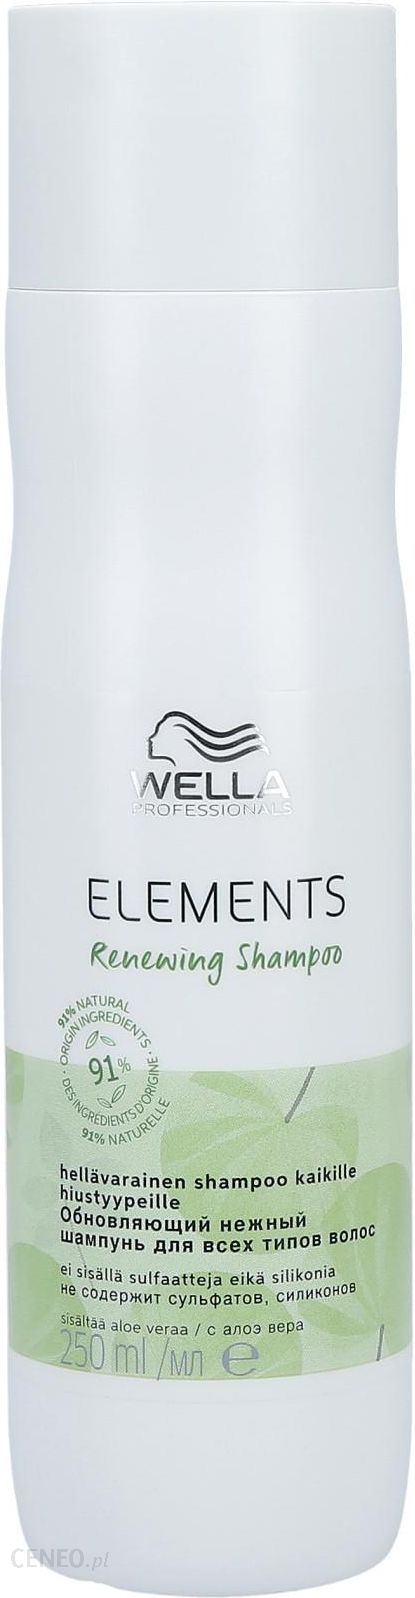 wella elements szampon opinie